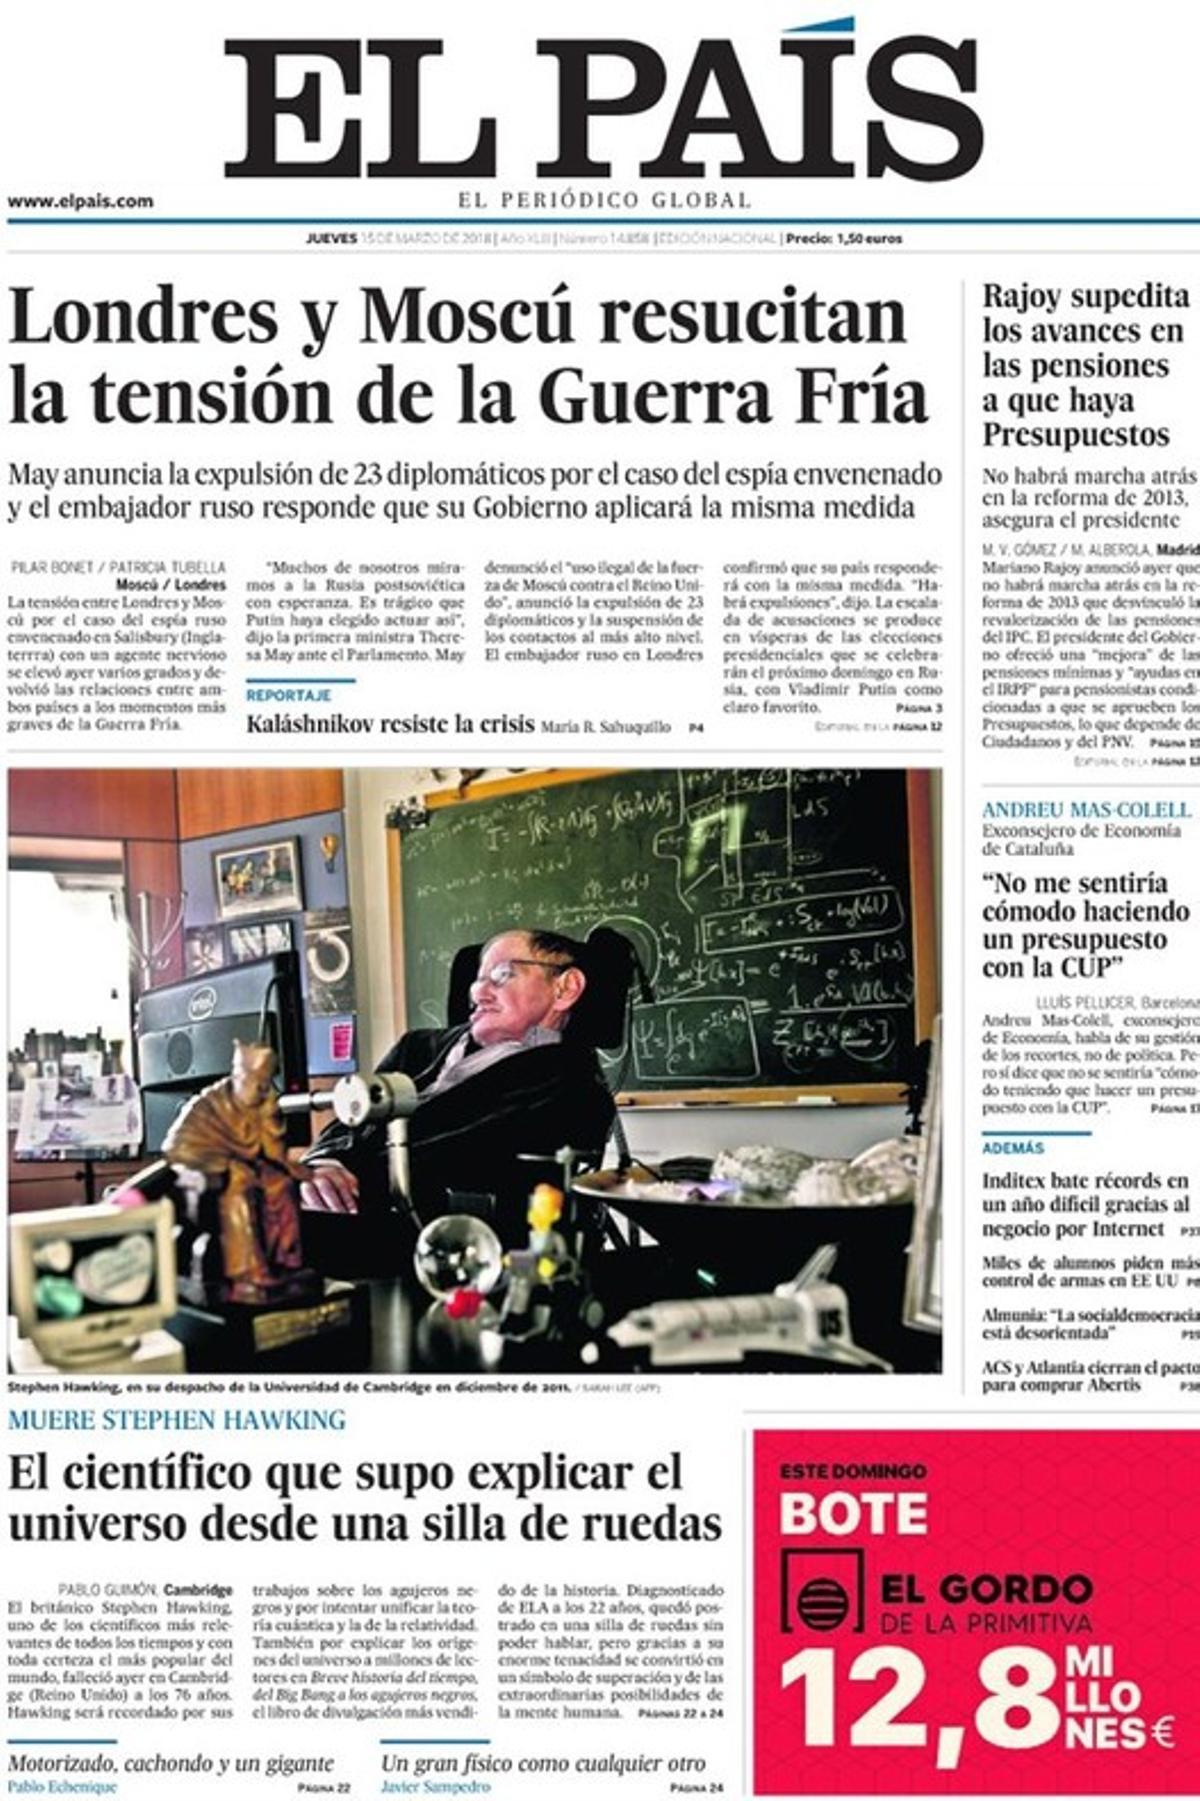 El quiosco salva a Rajoy del agujero negro de las pensiones